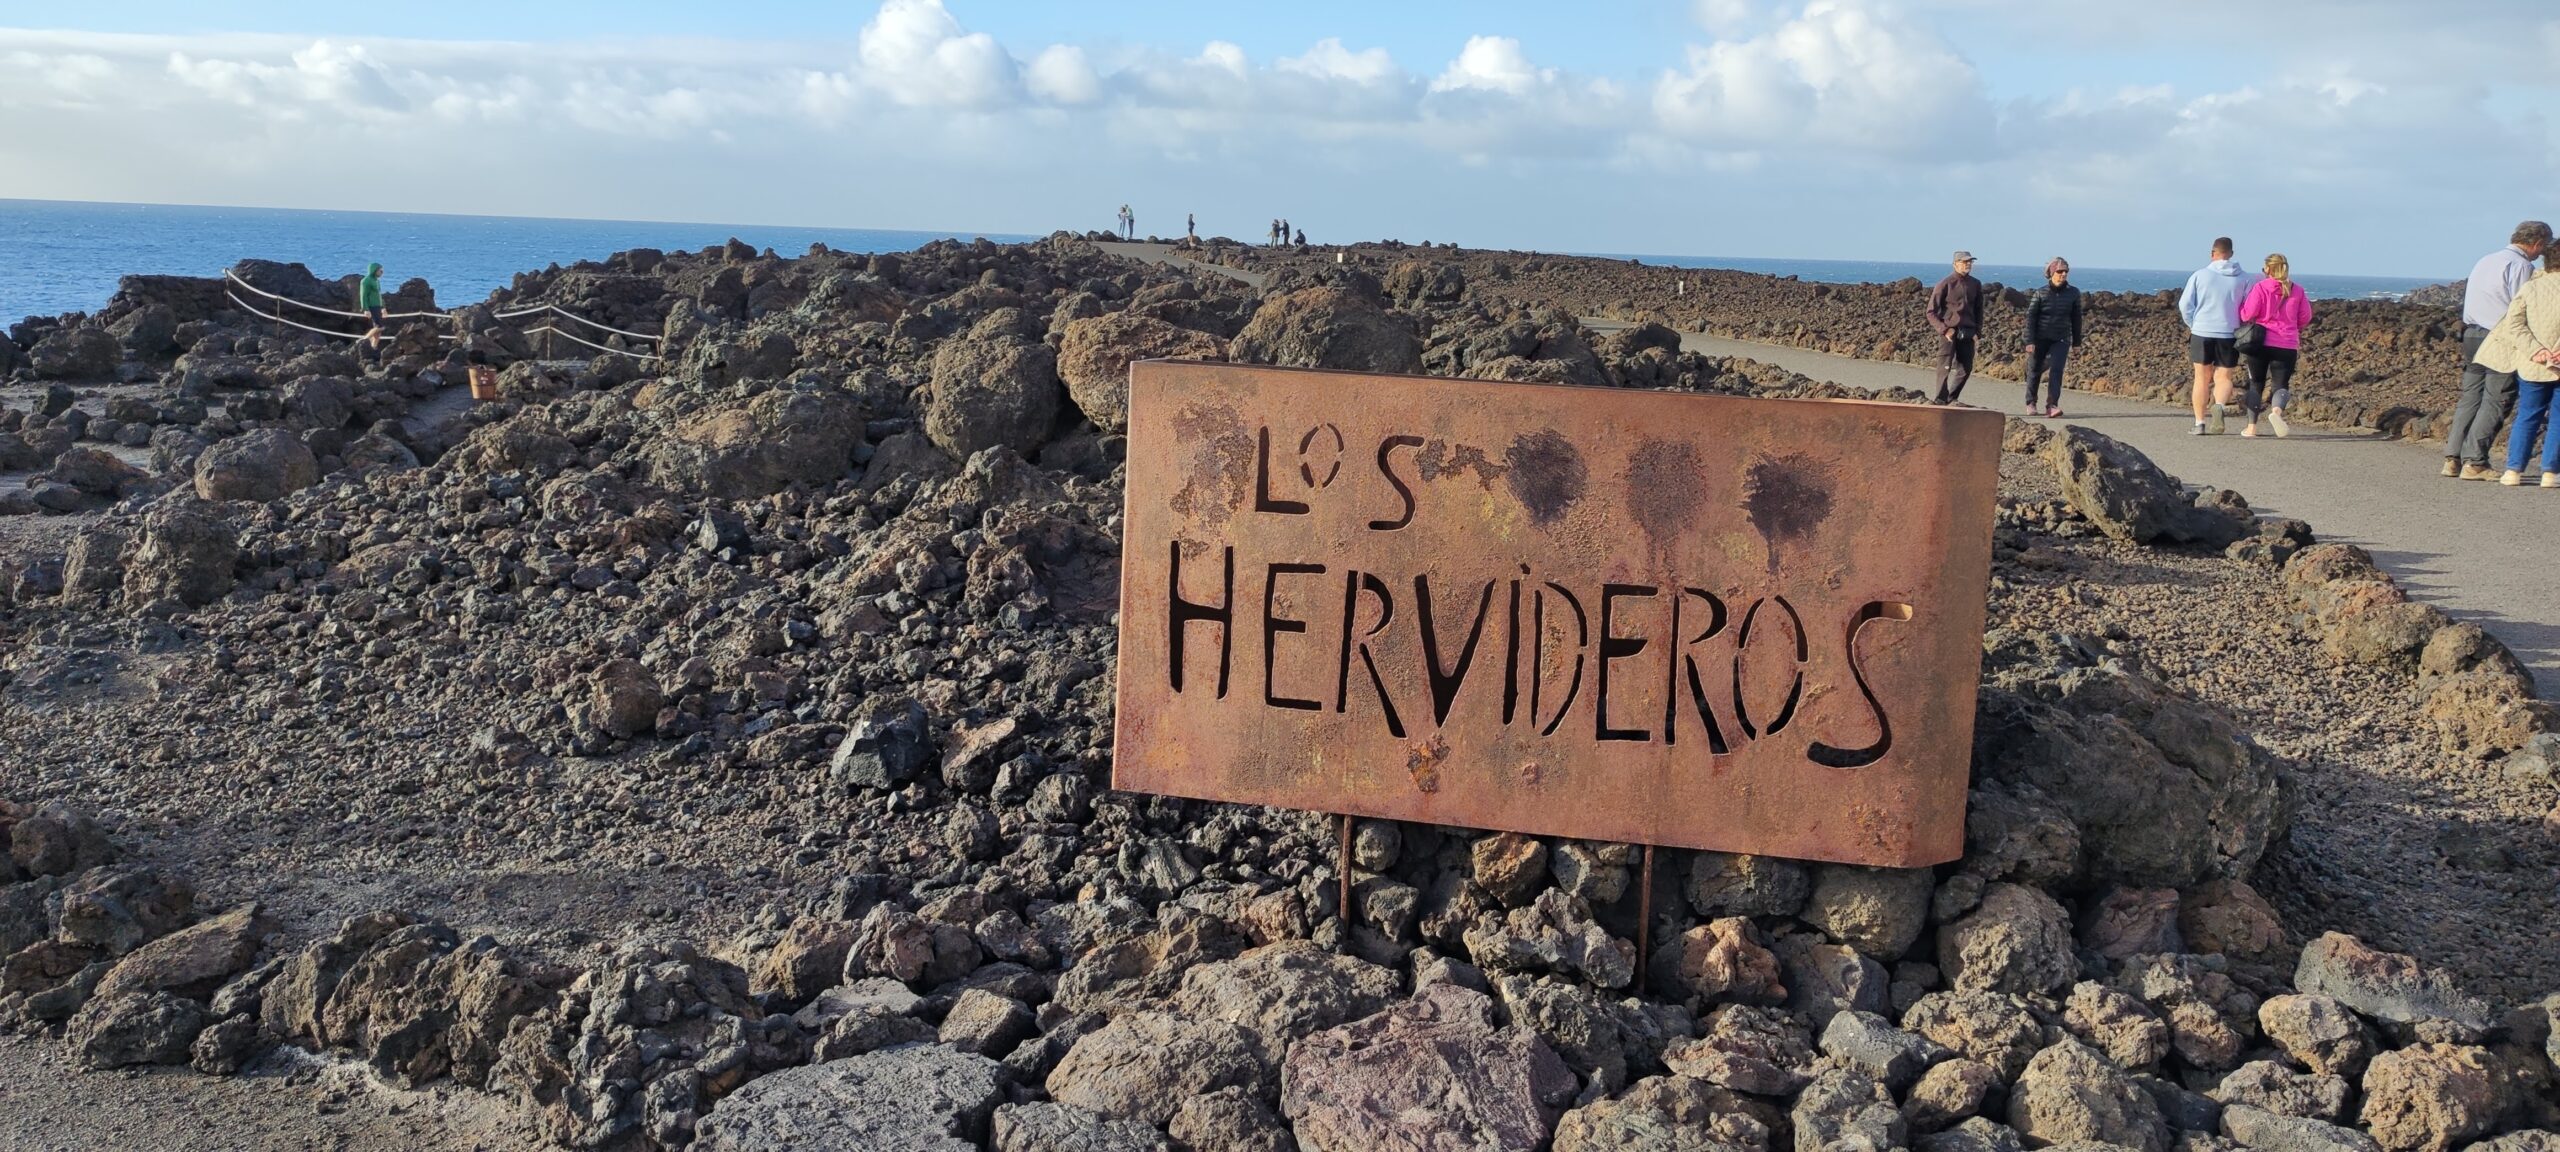 Los Hervideros, Lanzarote